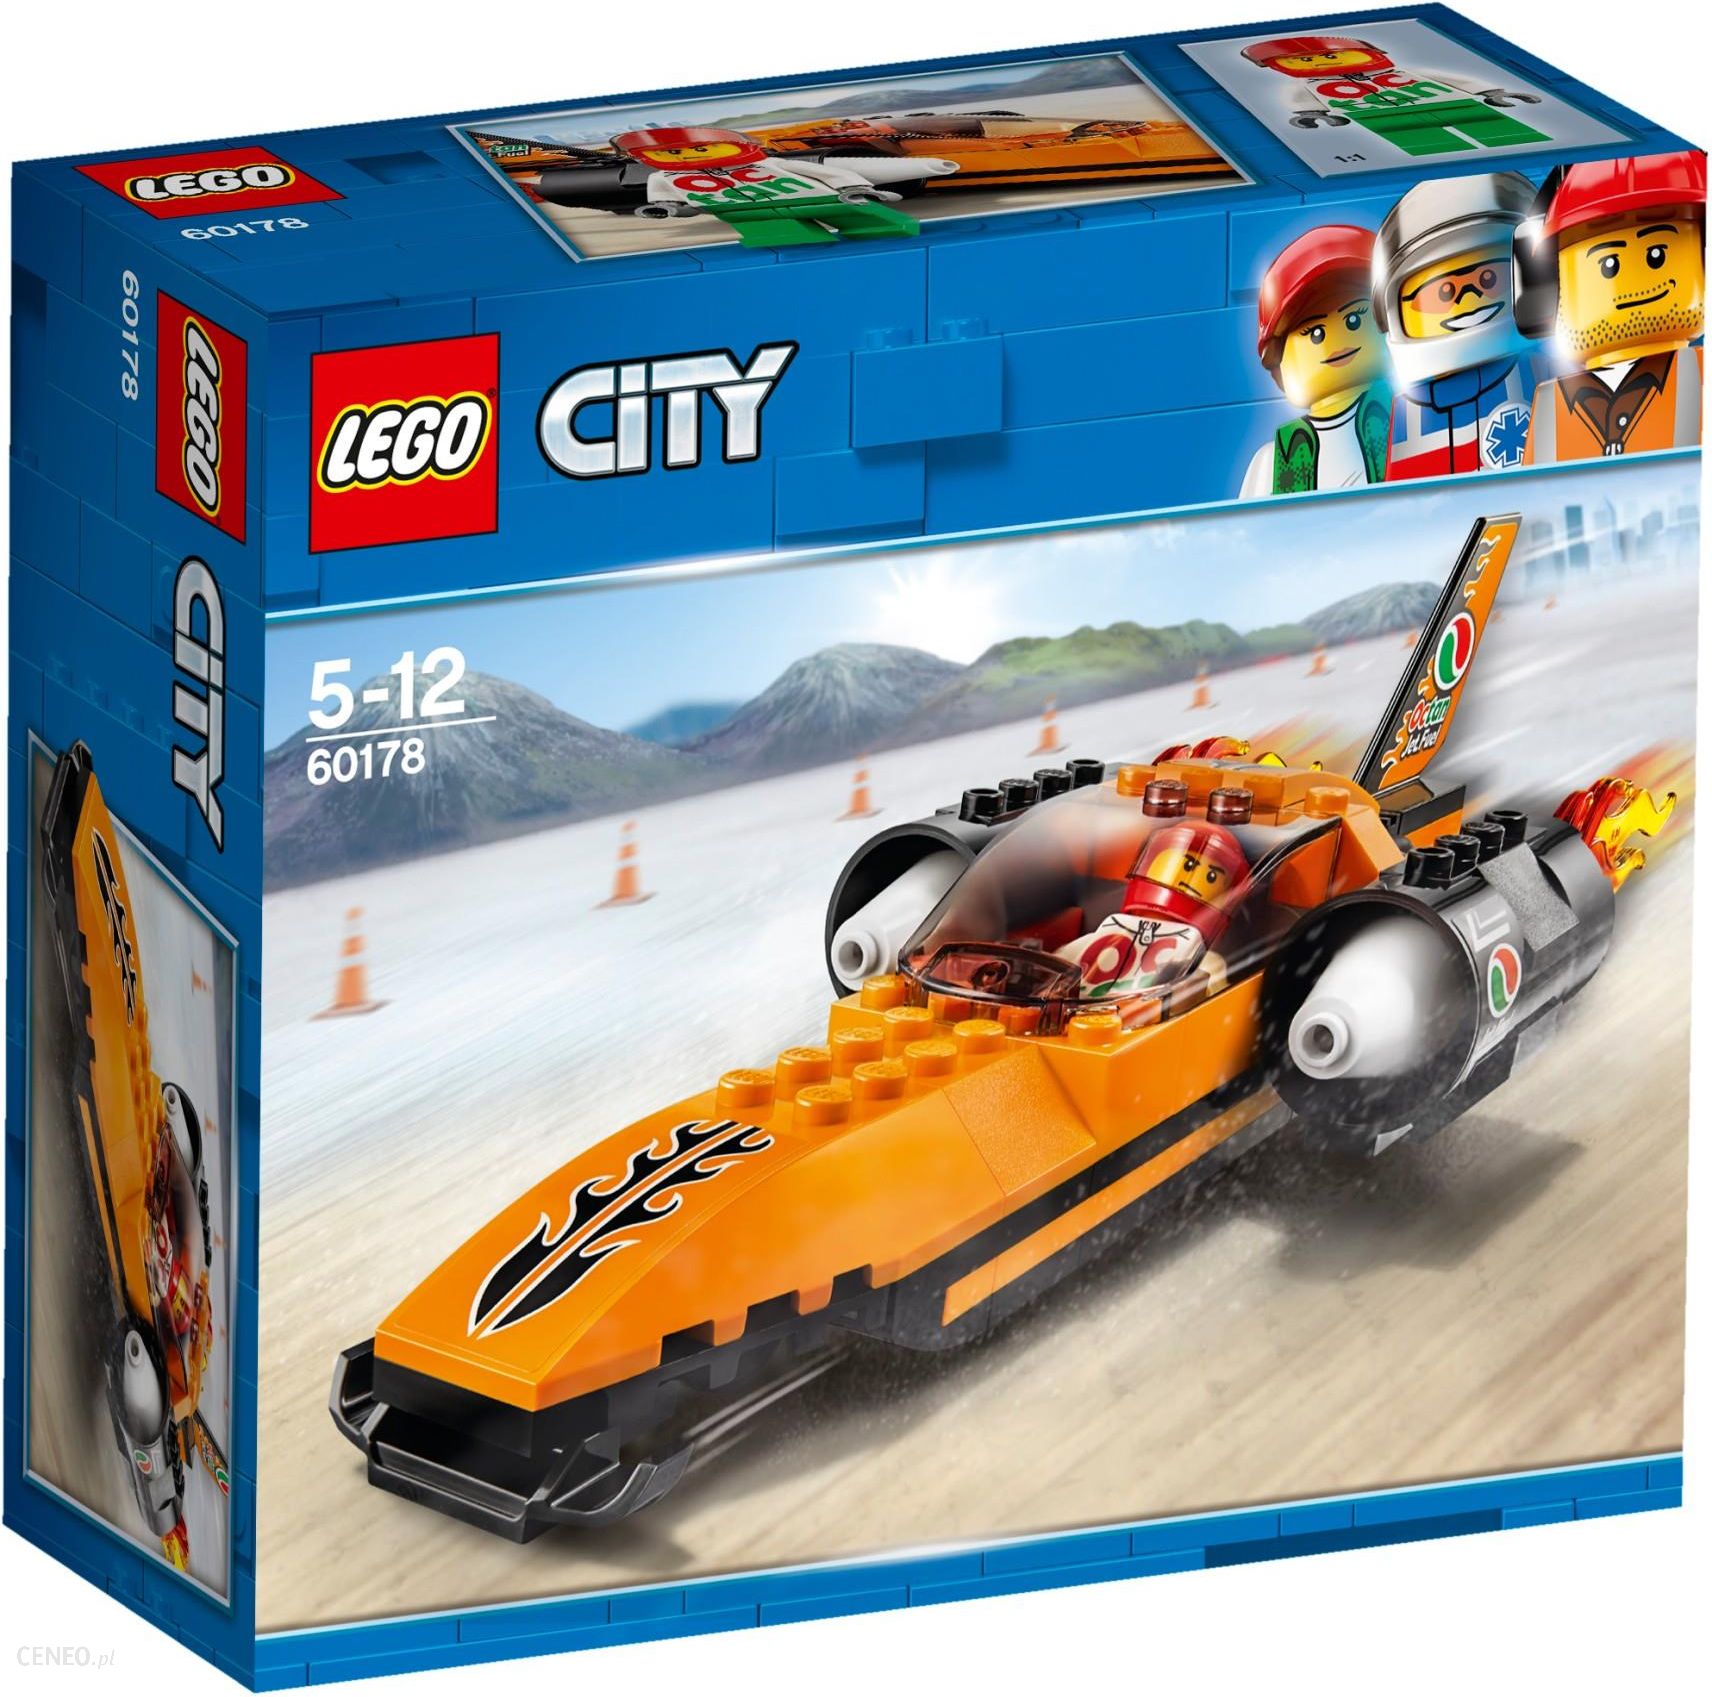 Lego 60178 City Wyscigowy Samochod Ceny I Opinie Ceneo Pl